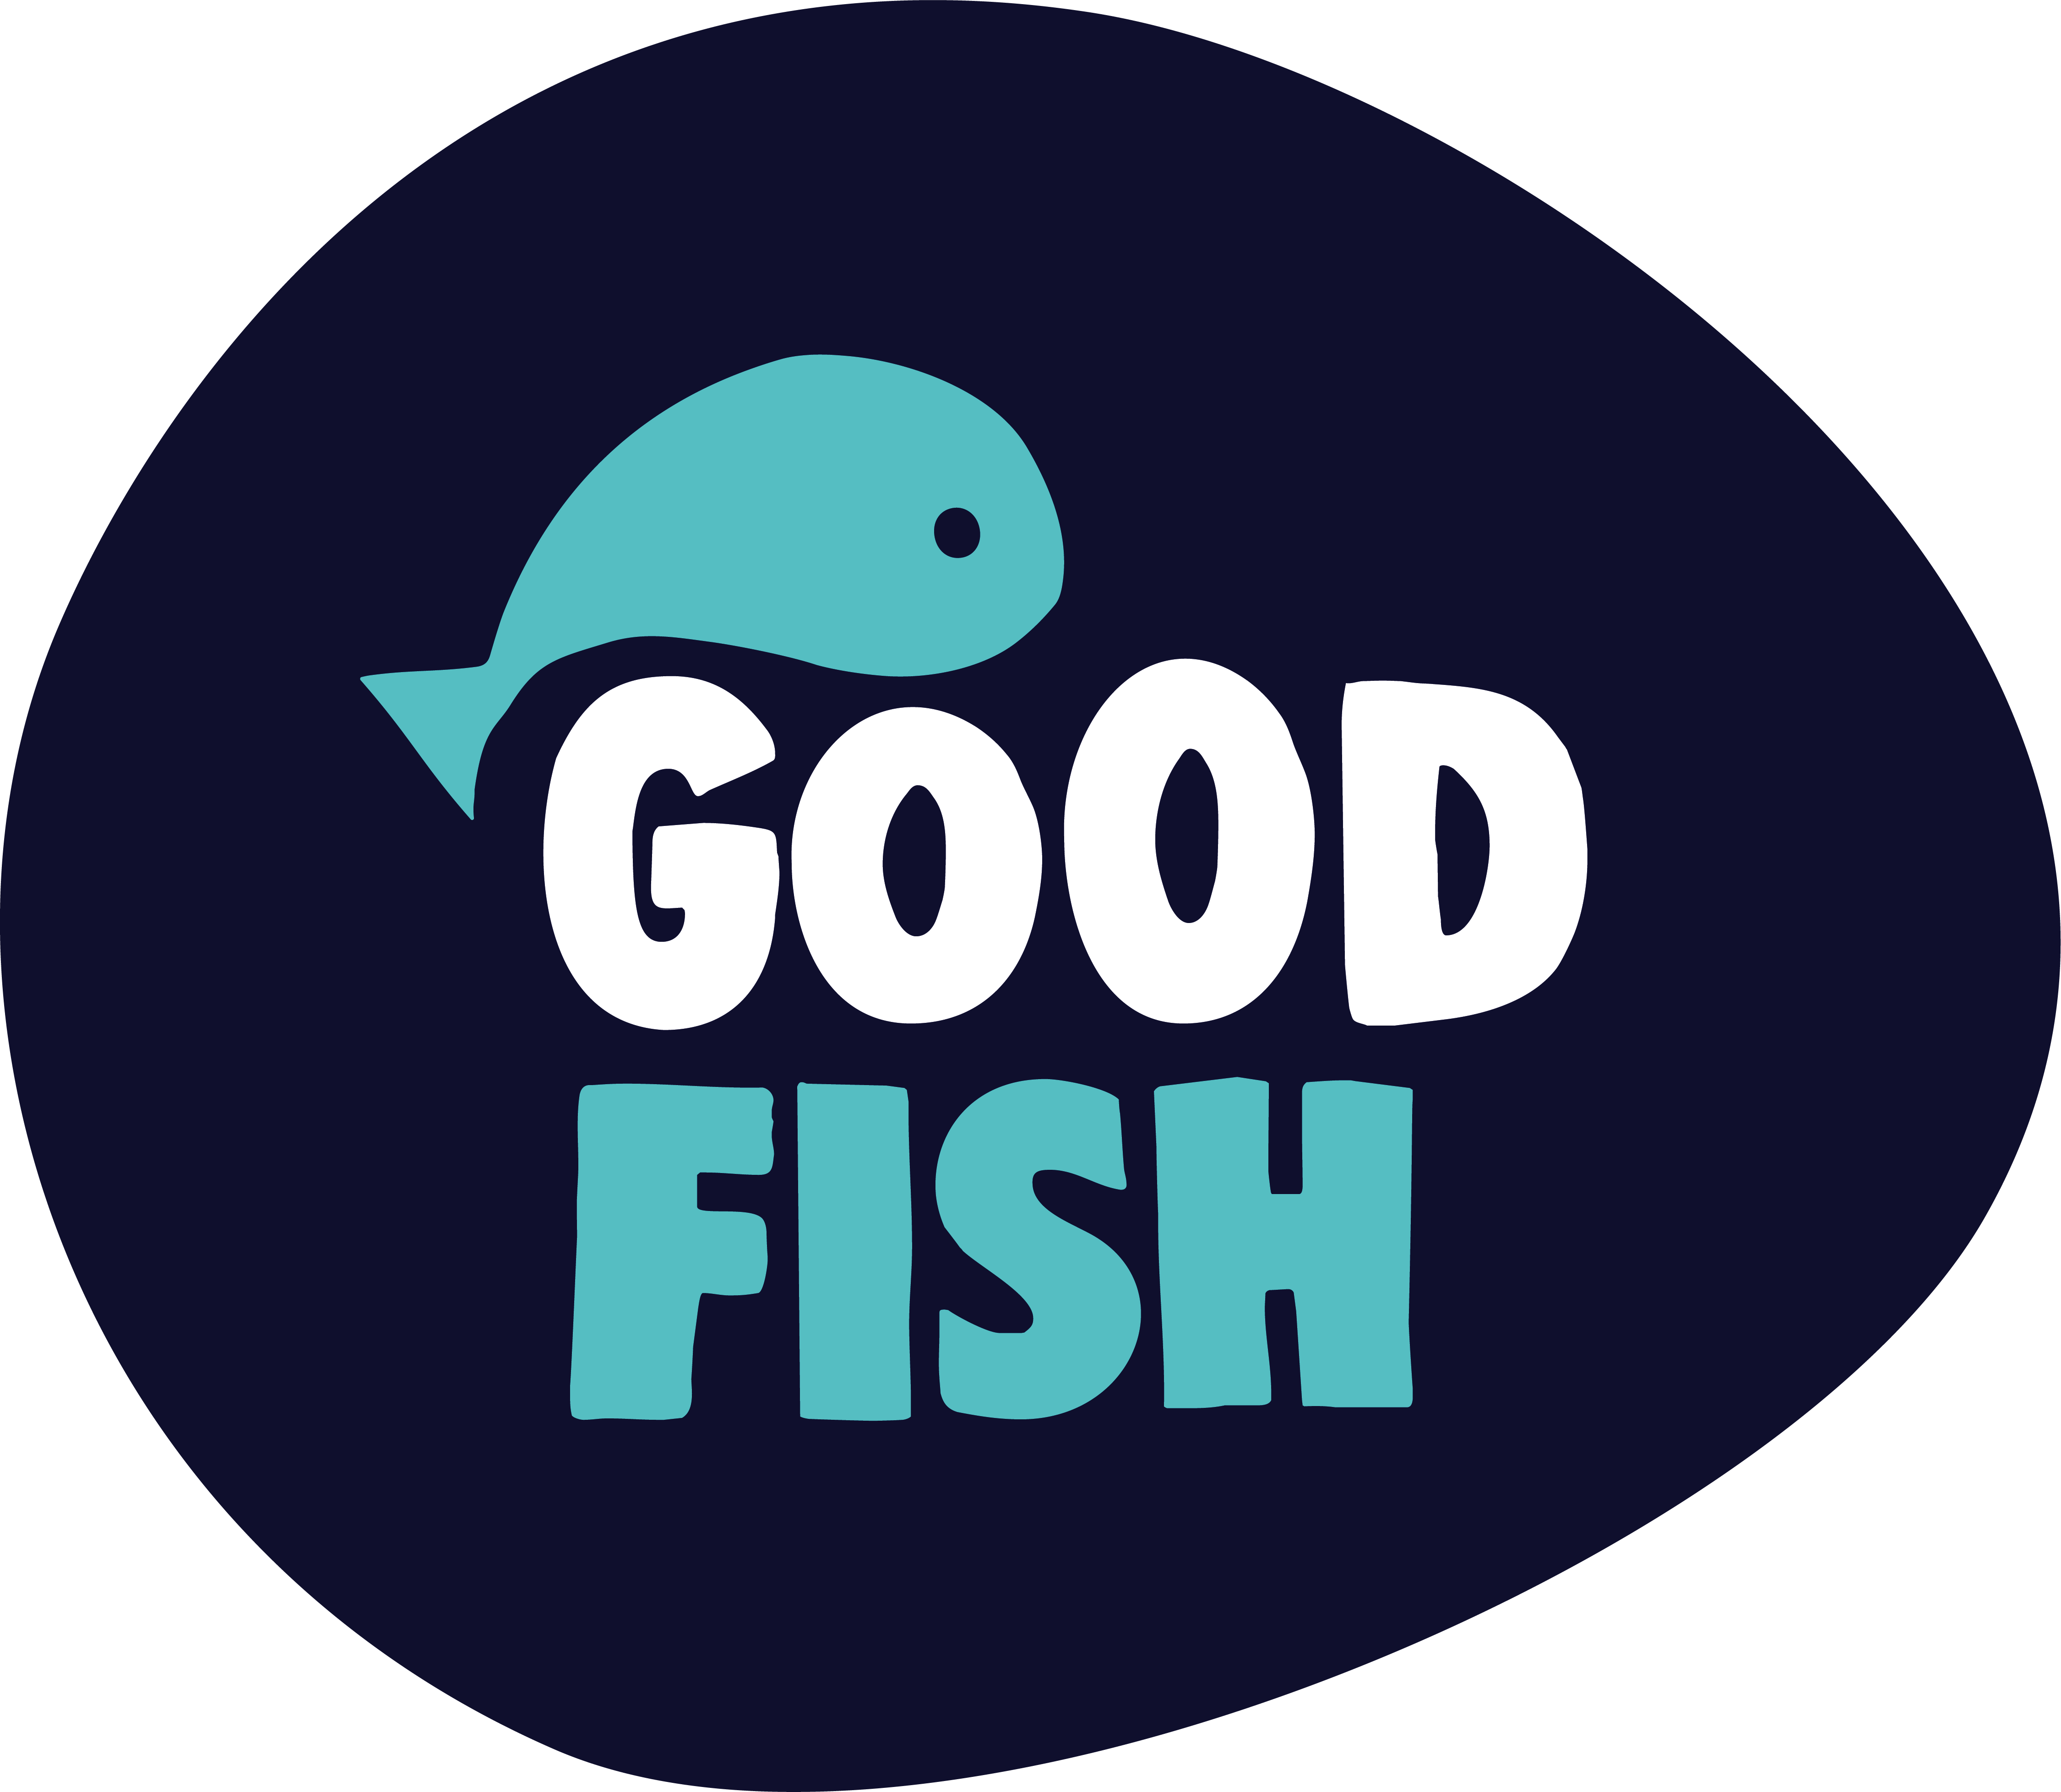 Good fish logo